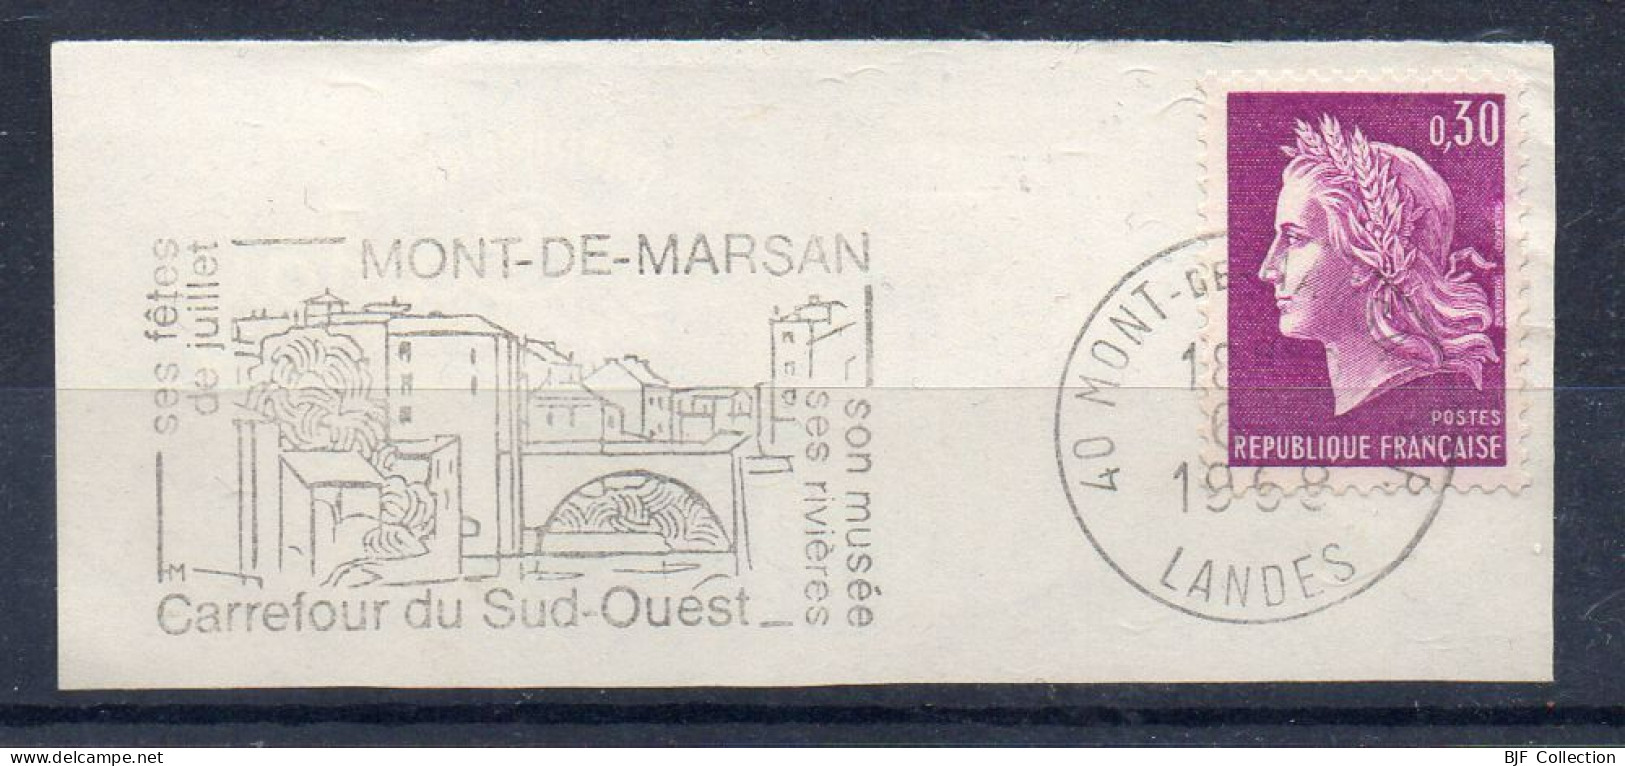 Flamme Illustrée : (40) MONT-DE-MARSAN R.P. – 6/??/1968 (Flamme Sur Fragment) - Mechanical Postmarks (Advertisement)